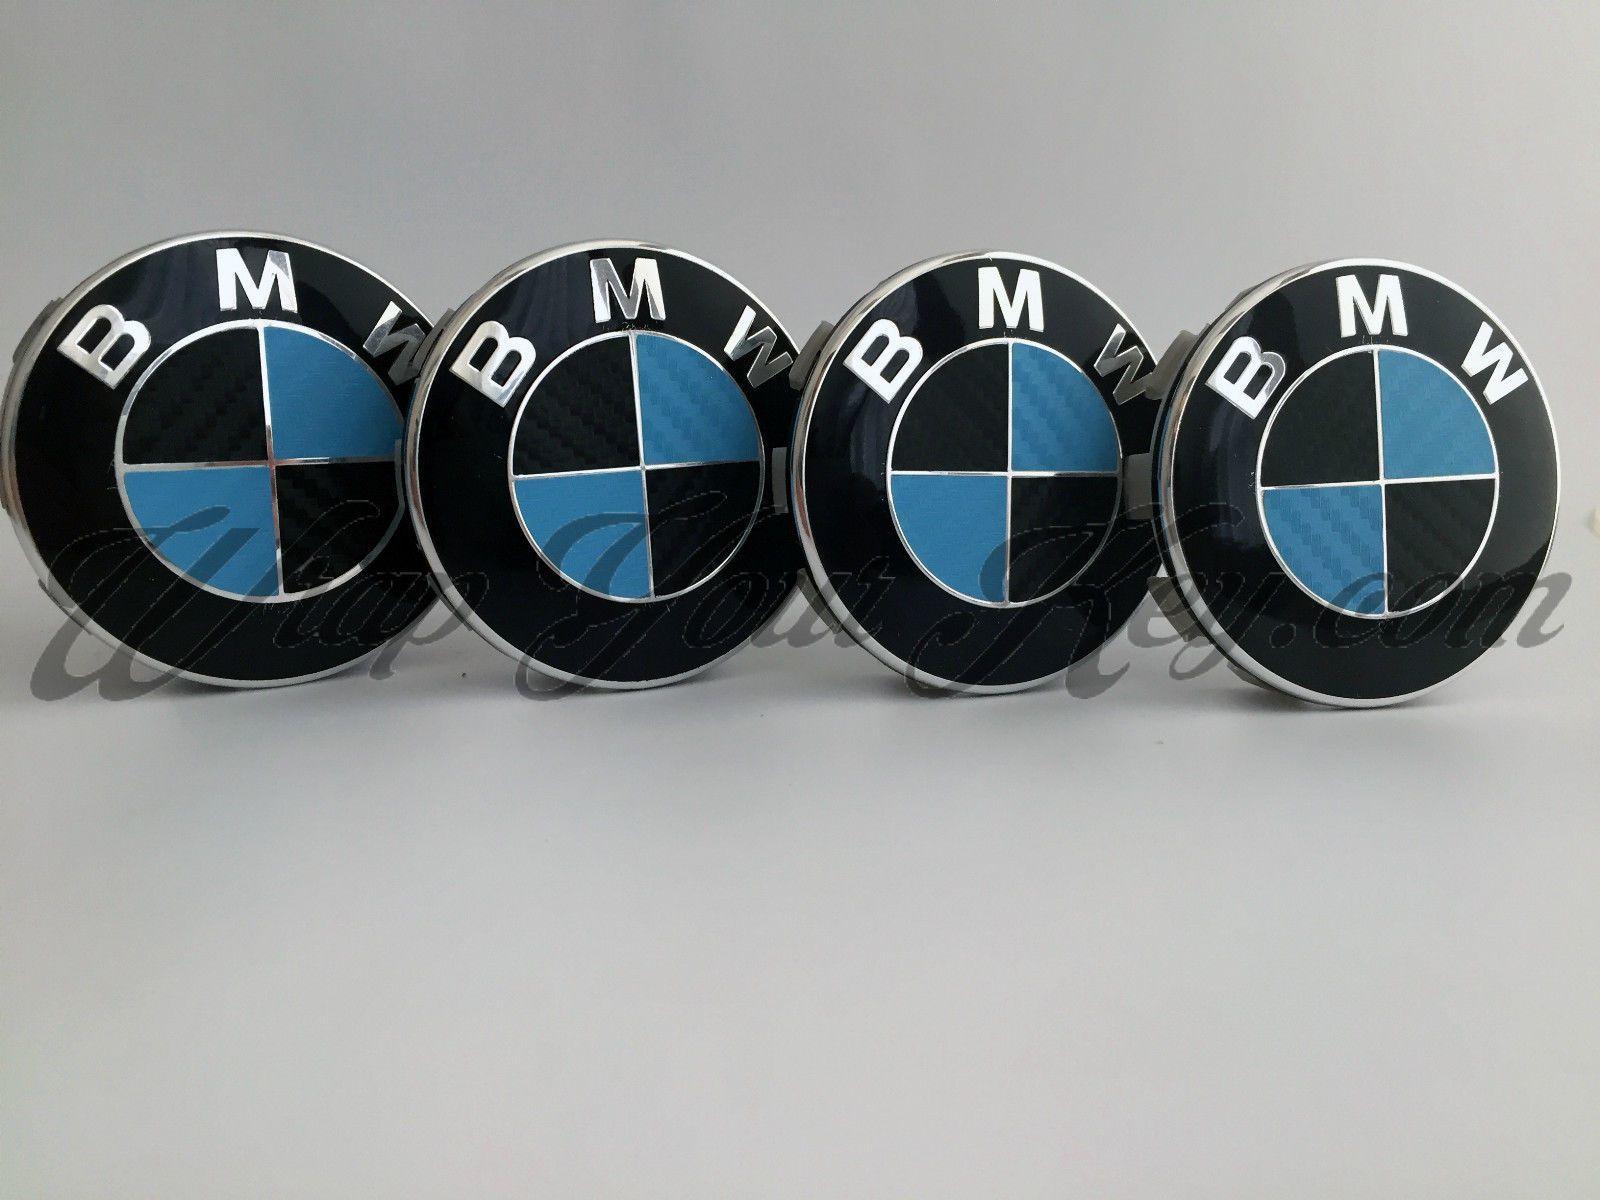 Light Blue and Black Logo - BLACK & LIGHT BLUE CARBON BMW Badge Emblem Overlay HOOD TRUNK RIMS